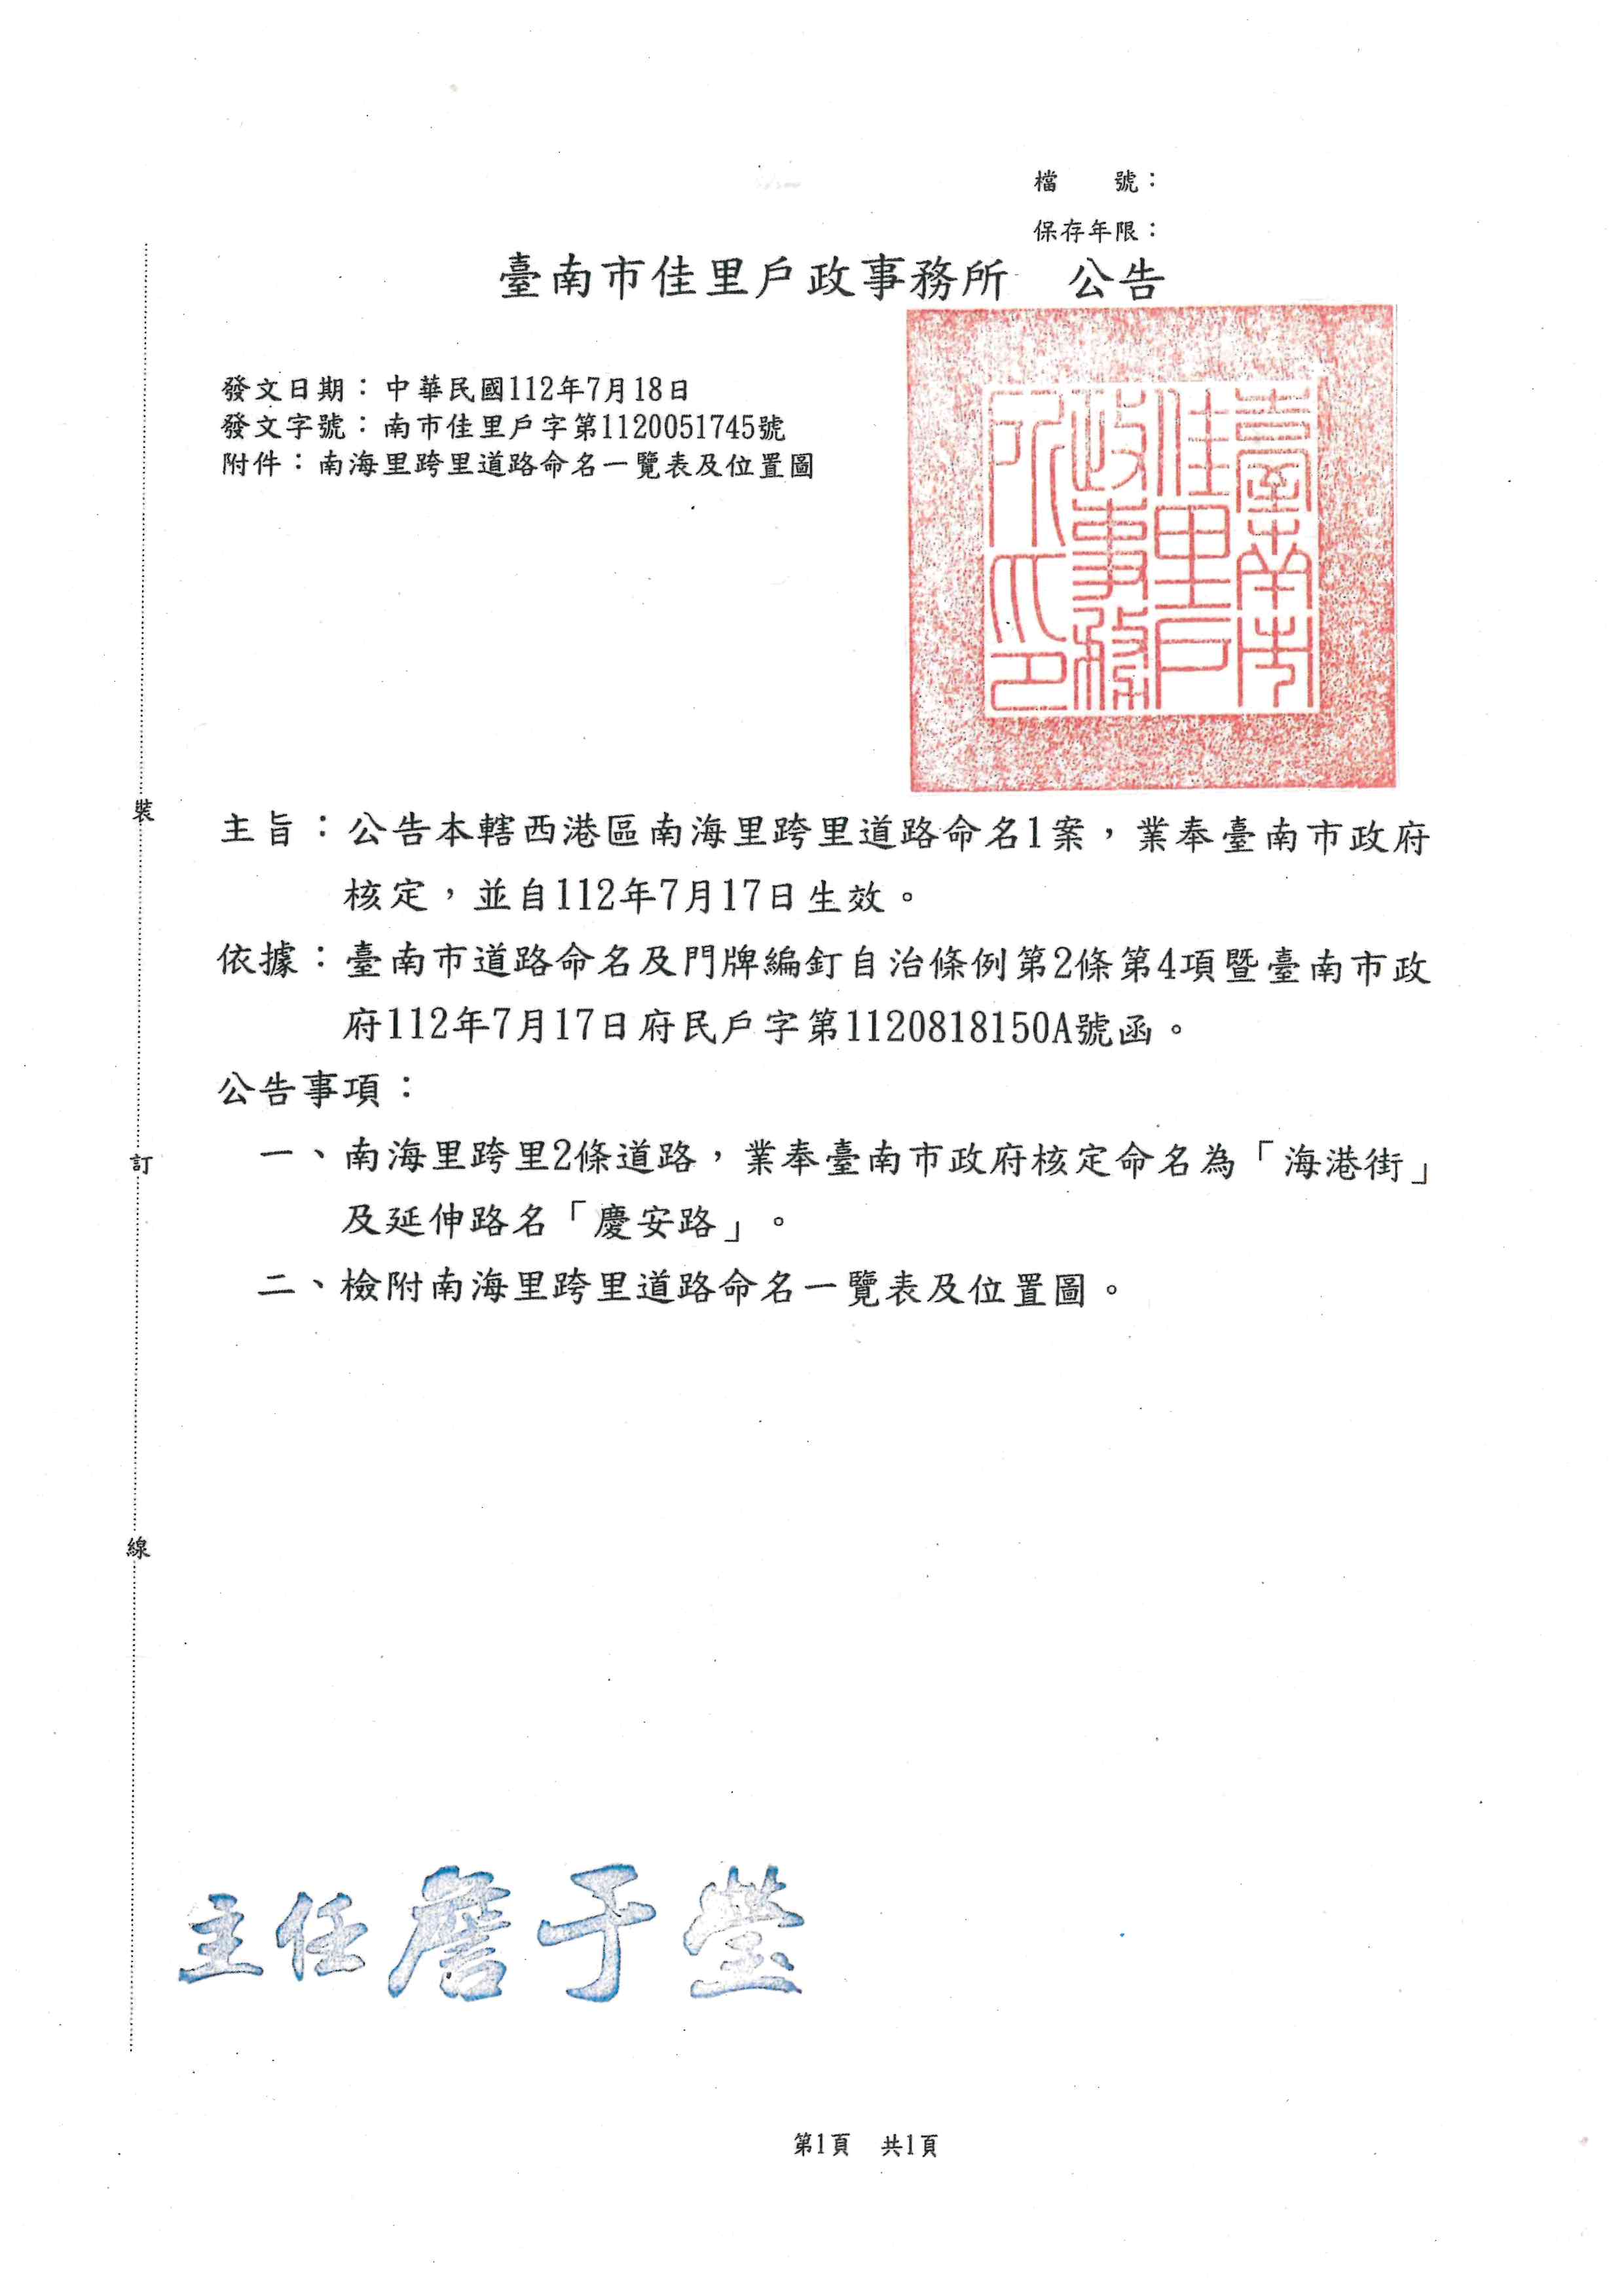 公告臺南市西港區南海里跨里道路命名1案，業奉臺南市政府核定，並自112年7月17日生效。